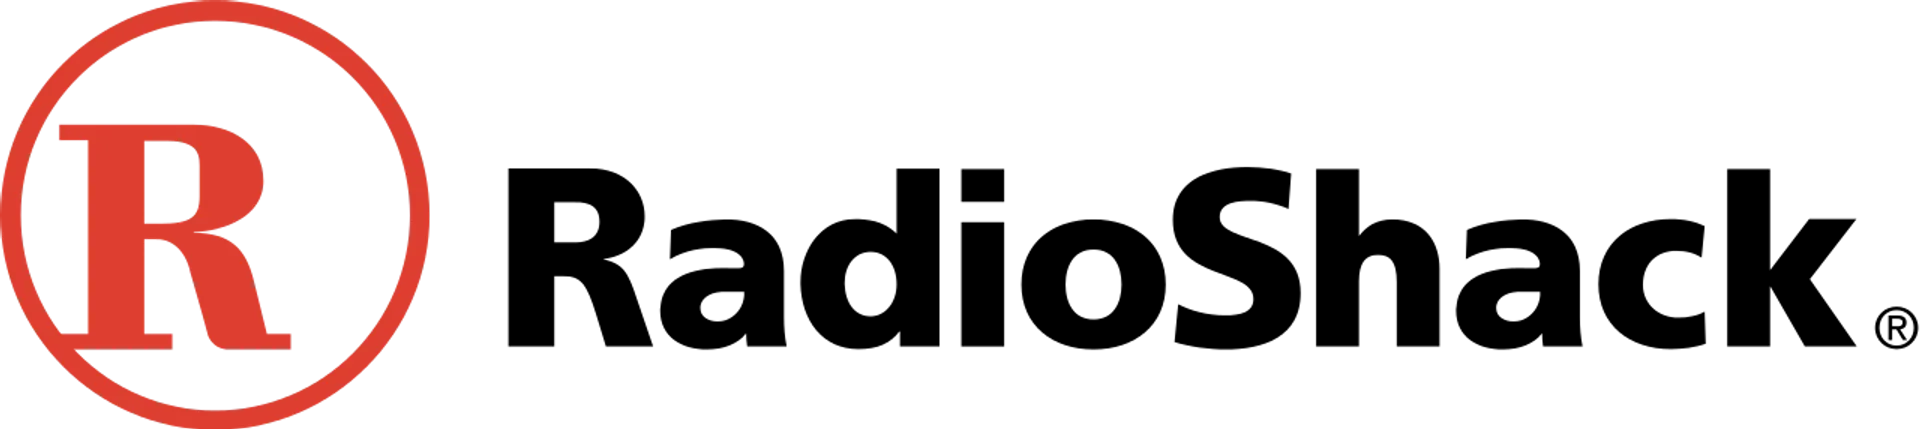 RADIOSHACK logo